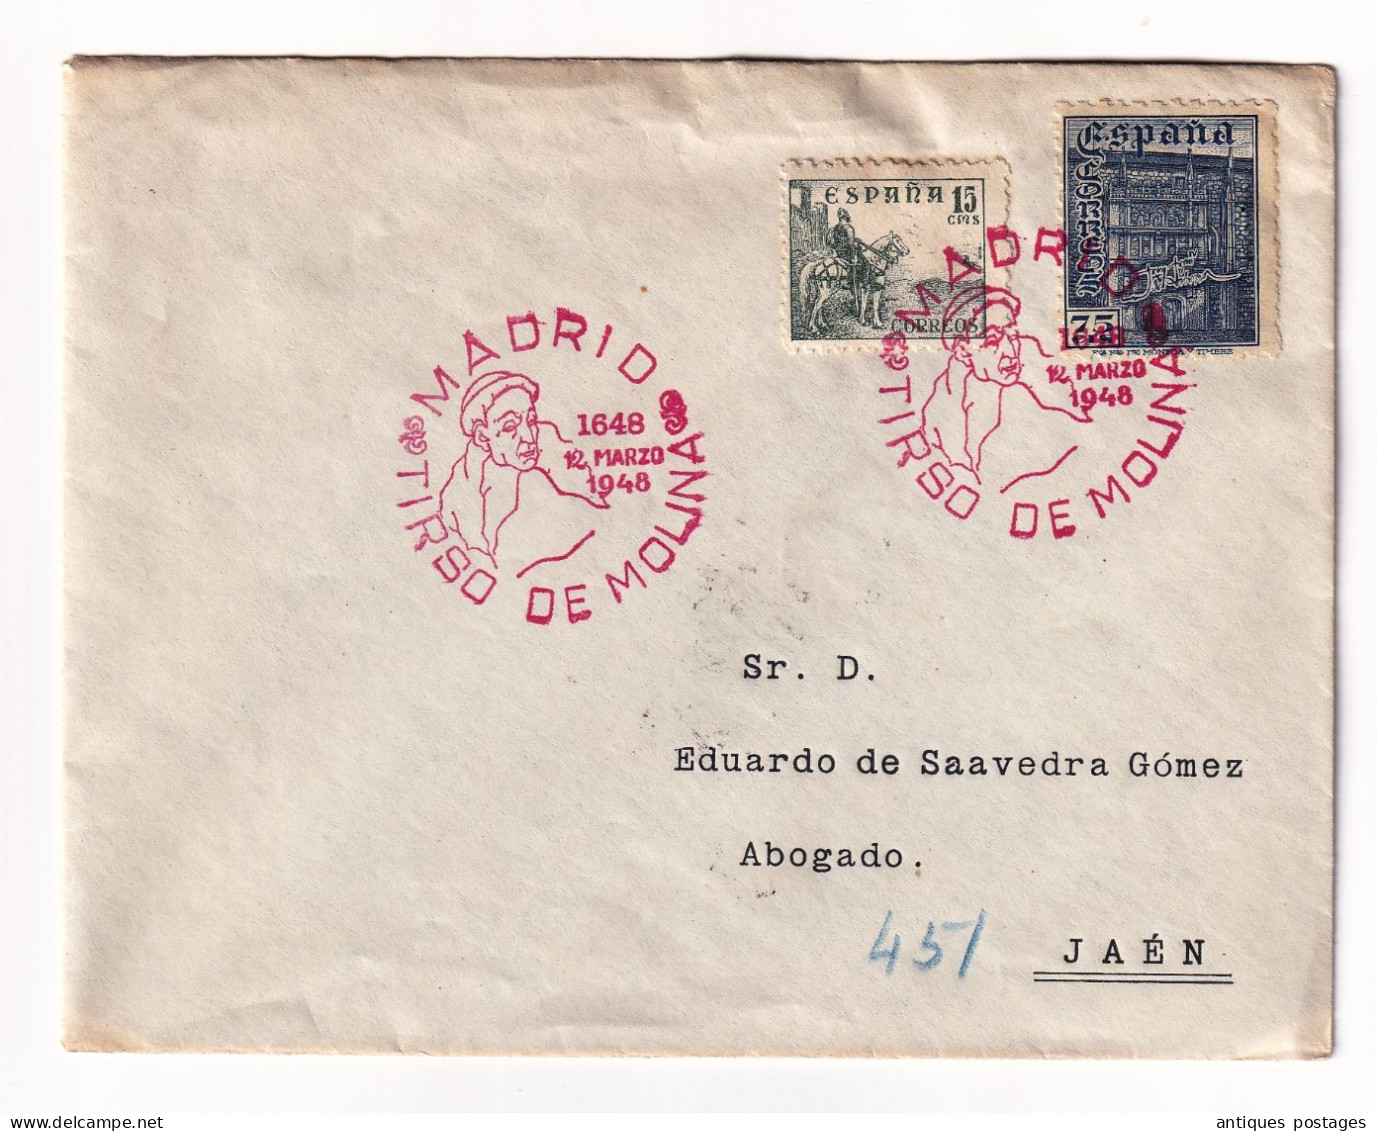 Lettres 12 Marso 1948 Espagne Madrid Matasello Tirso De Molina Certificado Jaén - Briefe U. Dokumente